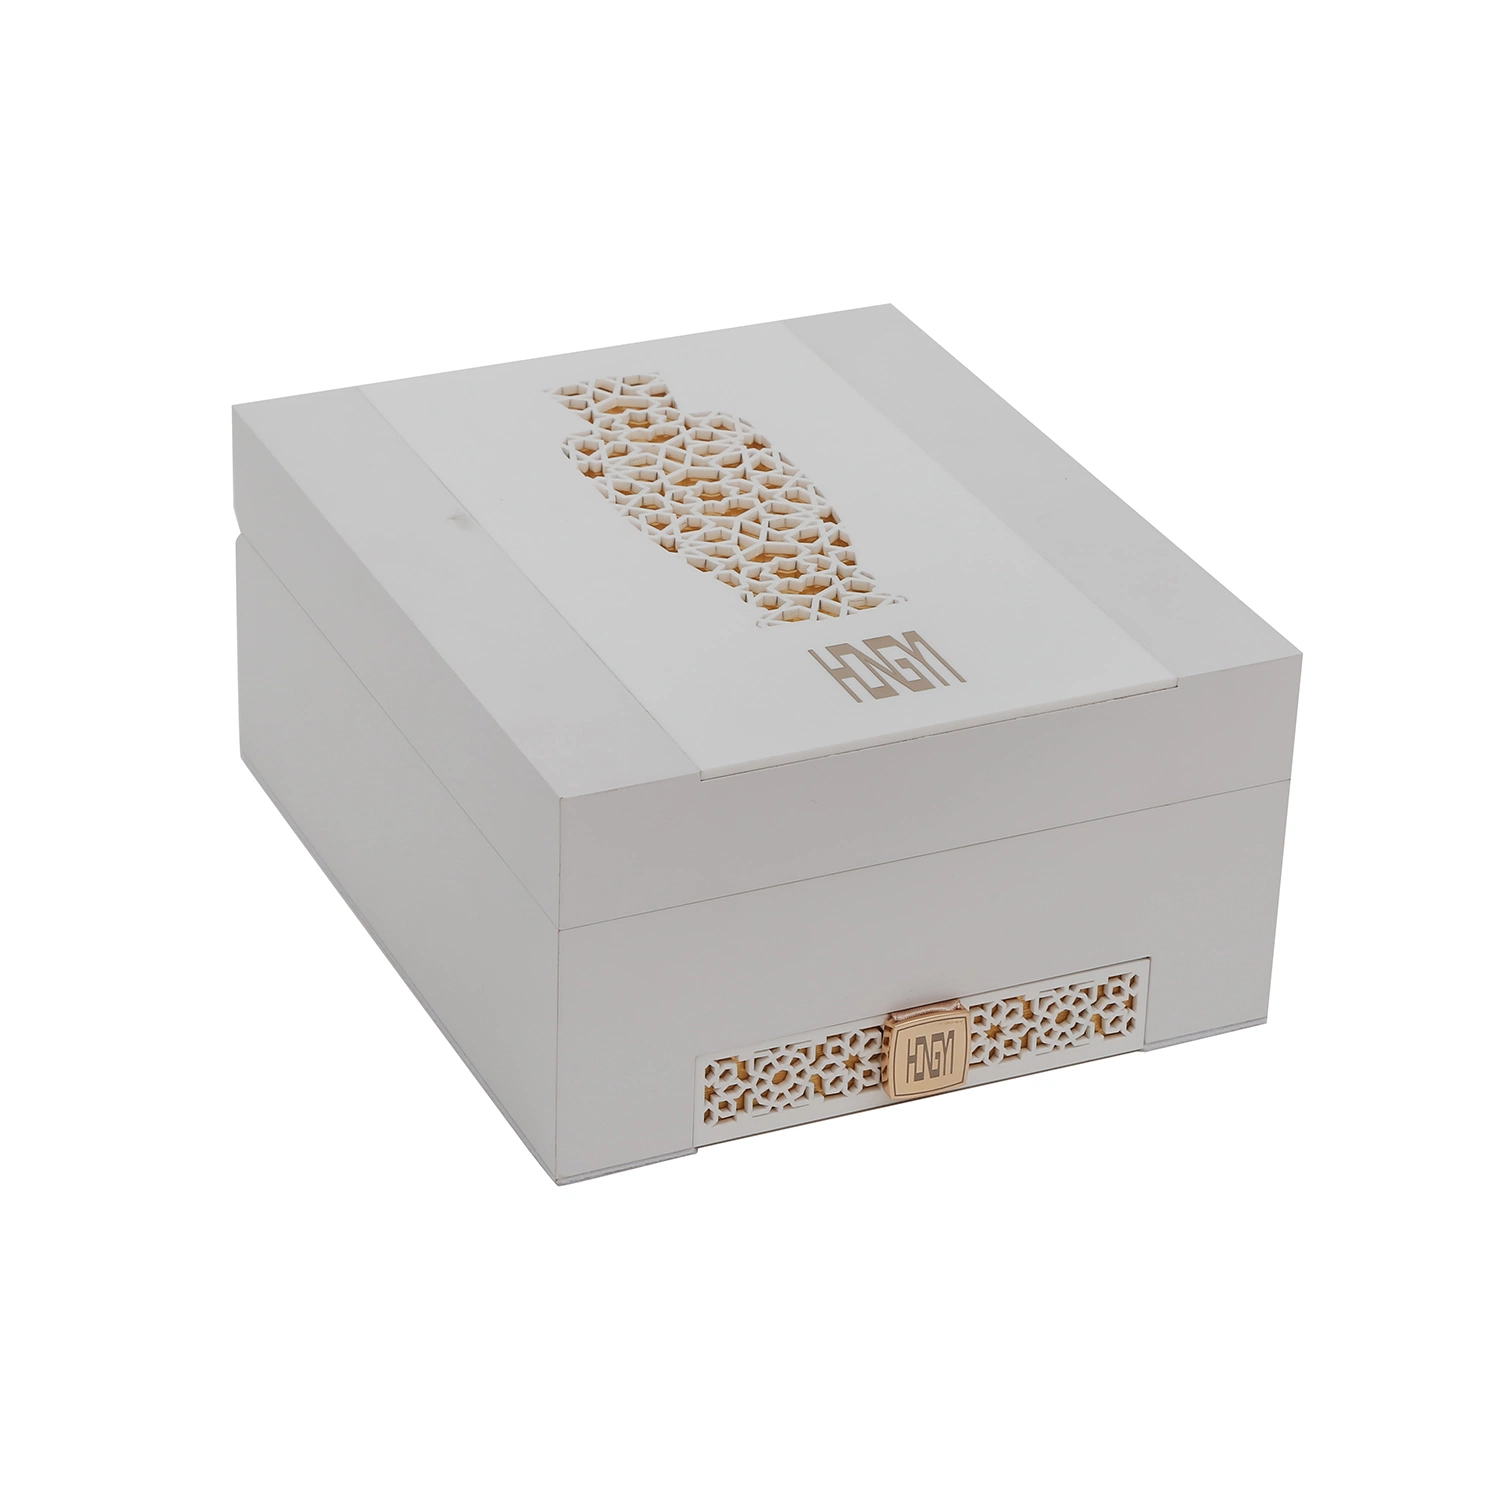 La Plaza de lujo personalizado caja de embalaje de cartón Ver Perfume desodorantes cosméticos Joya de regalo de cartón de Papel Caja decorativa